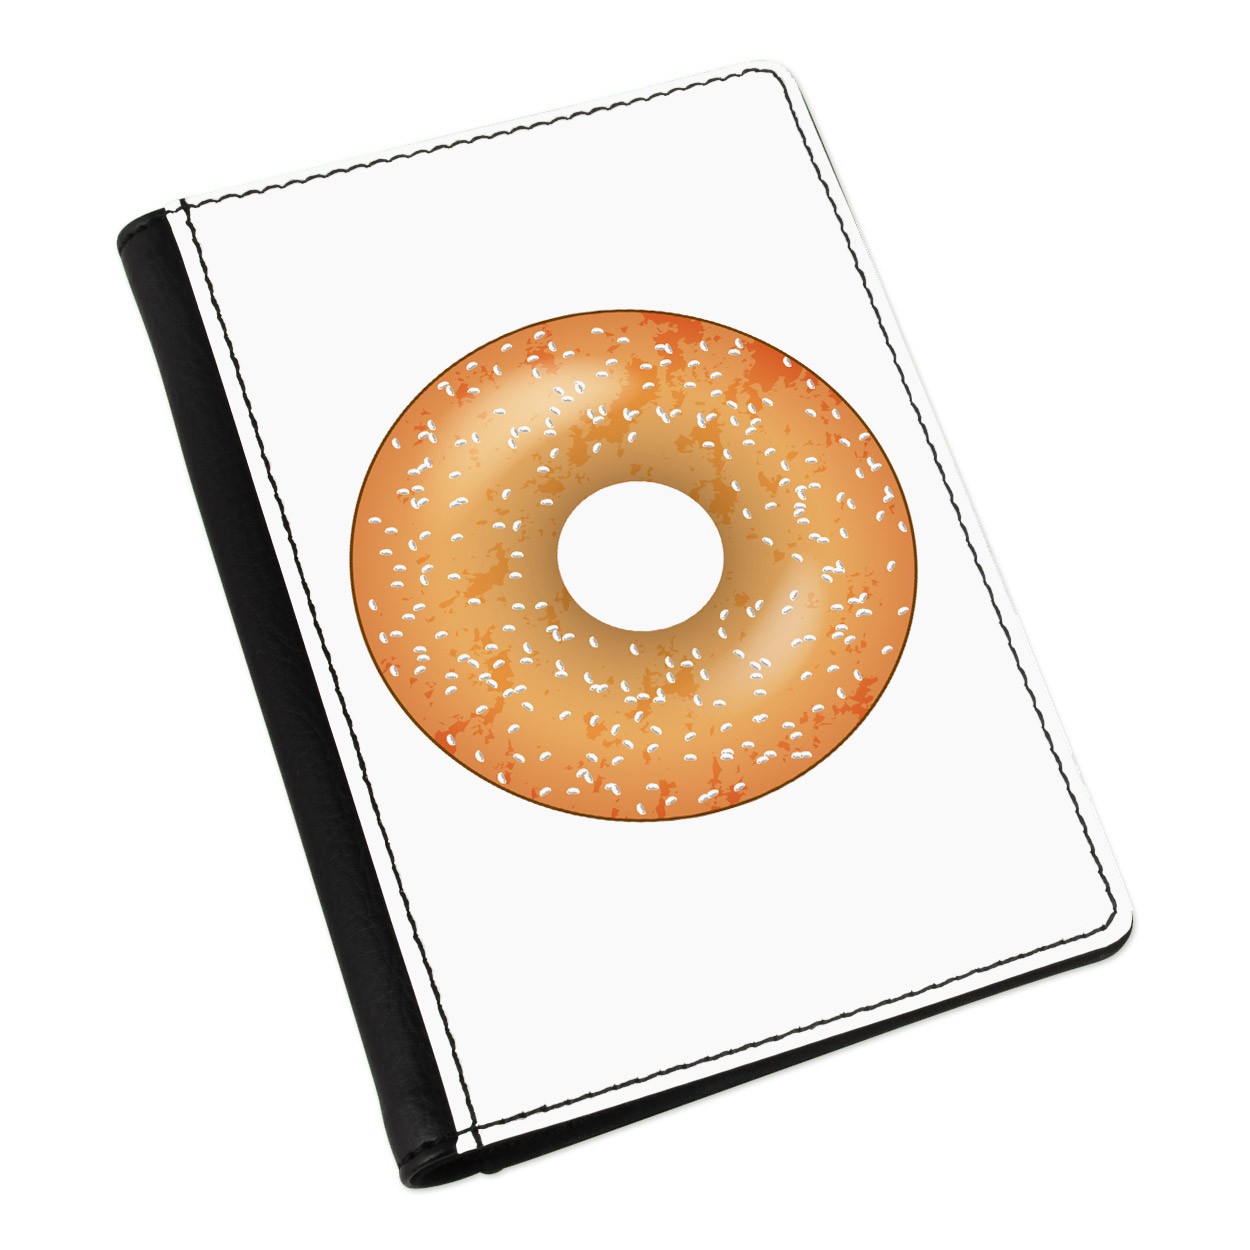 Sprinkled Glazed Doughnut Donut Passport Holder Cover